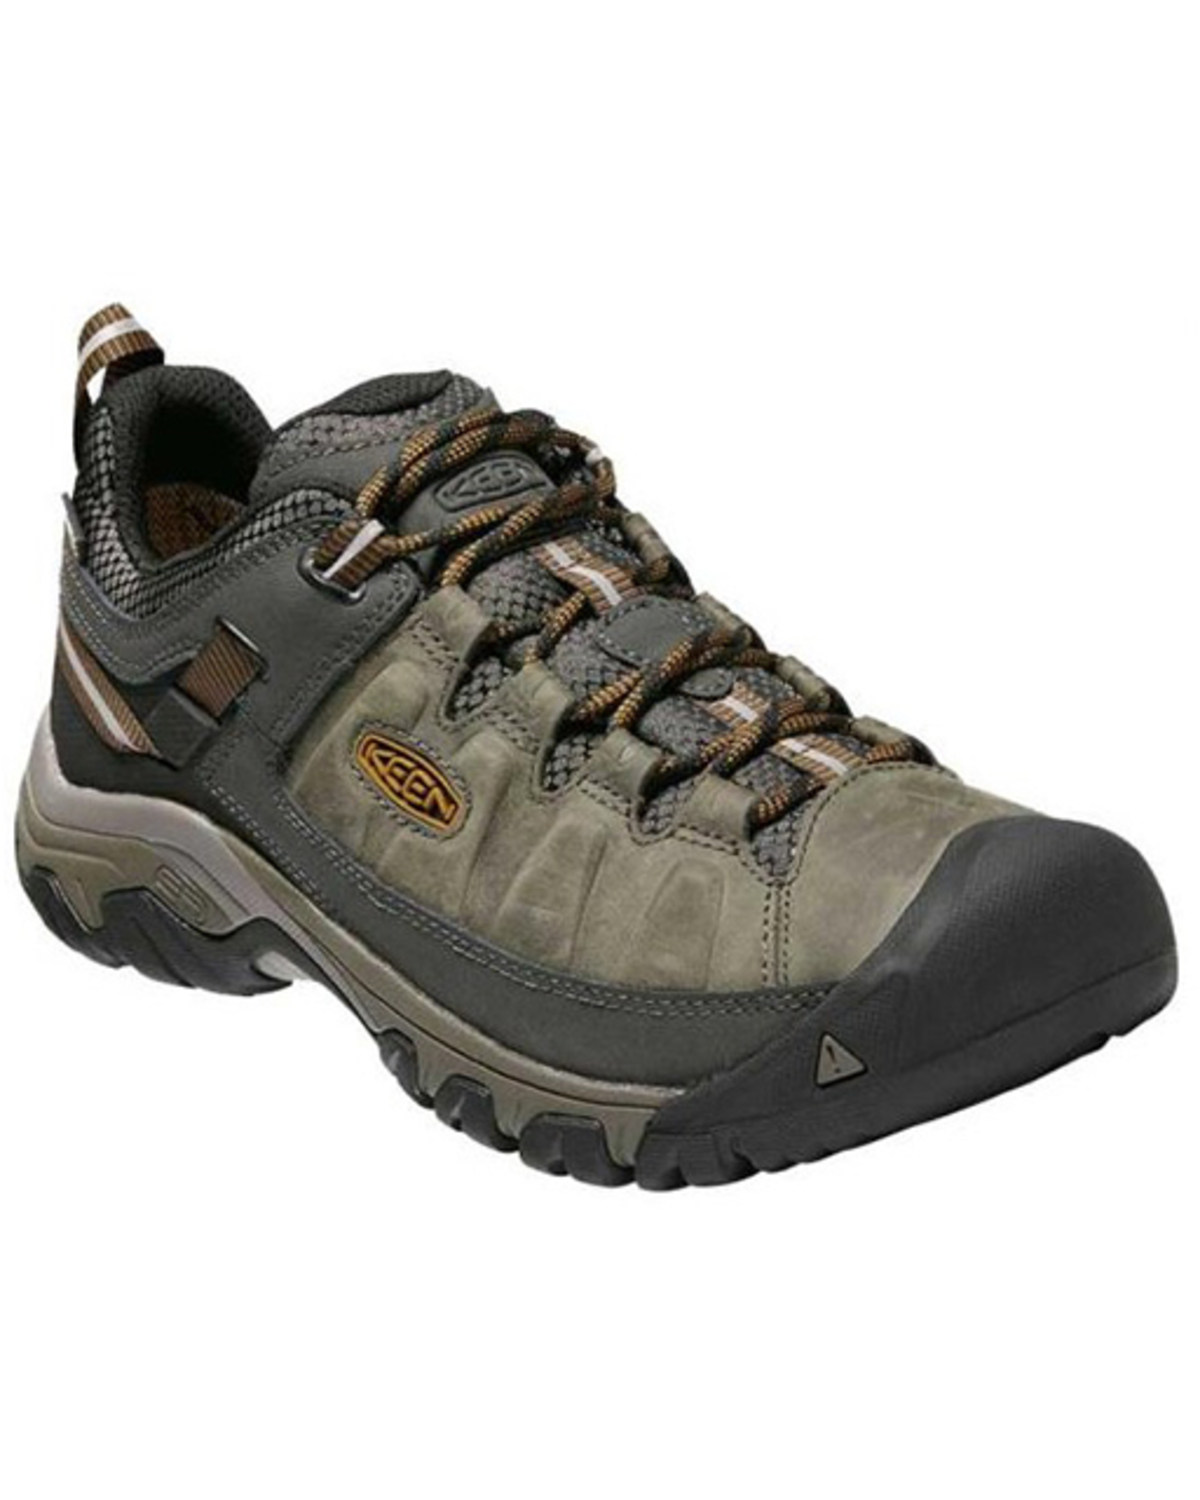 Keen Men's Targhee III Lace-Up Waterproof Hiking Boots - Soft Toe